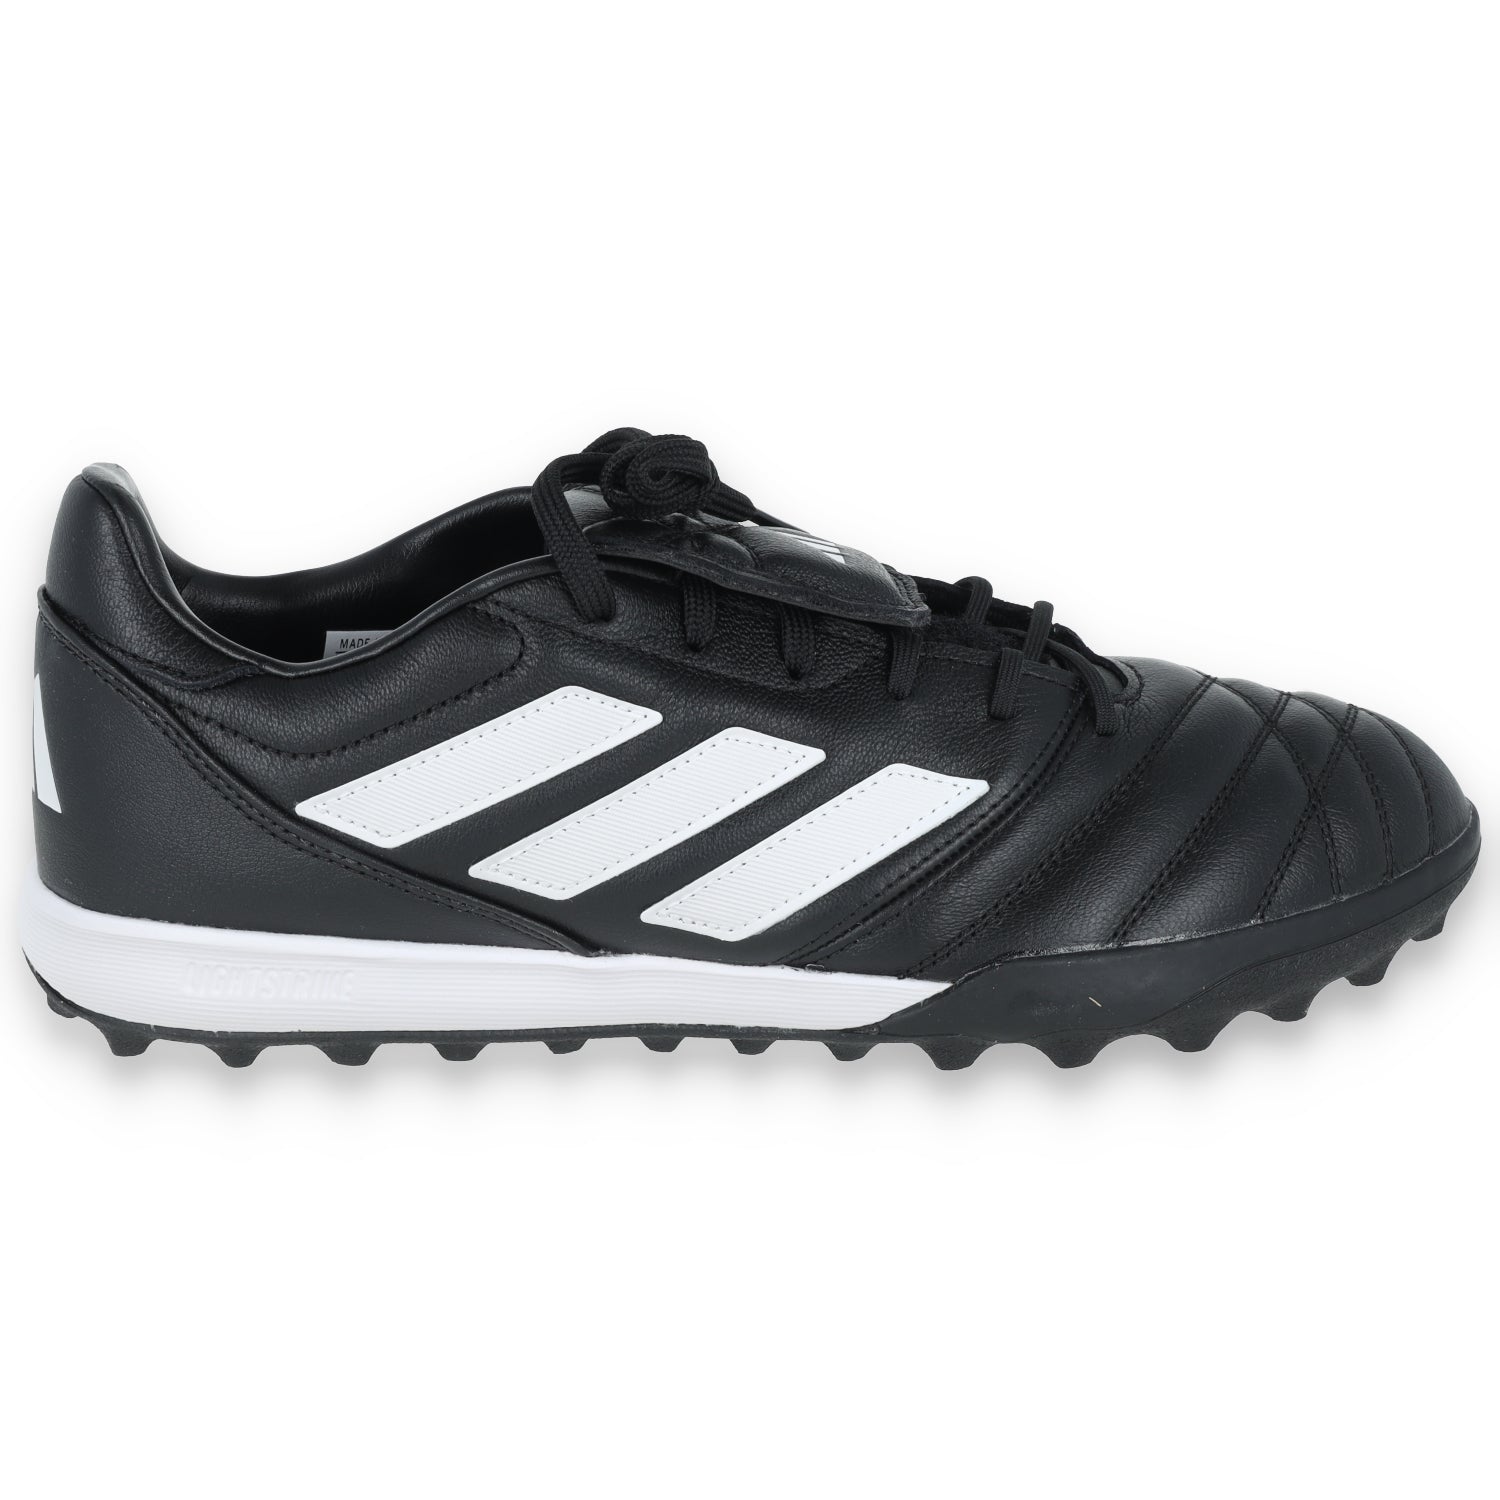 Adidas Copa Gloro TF-Black/White